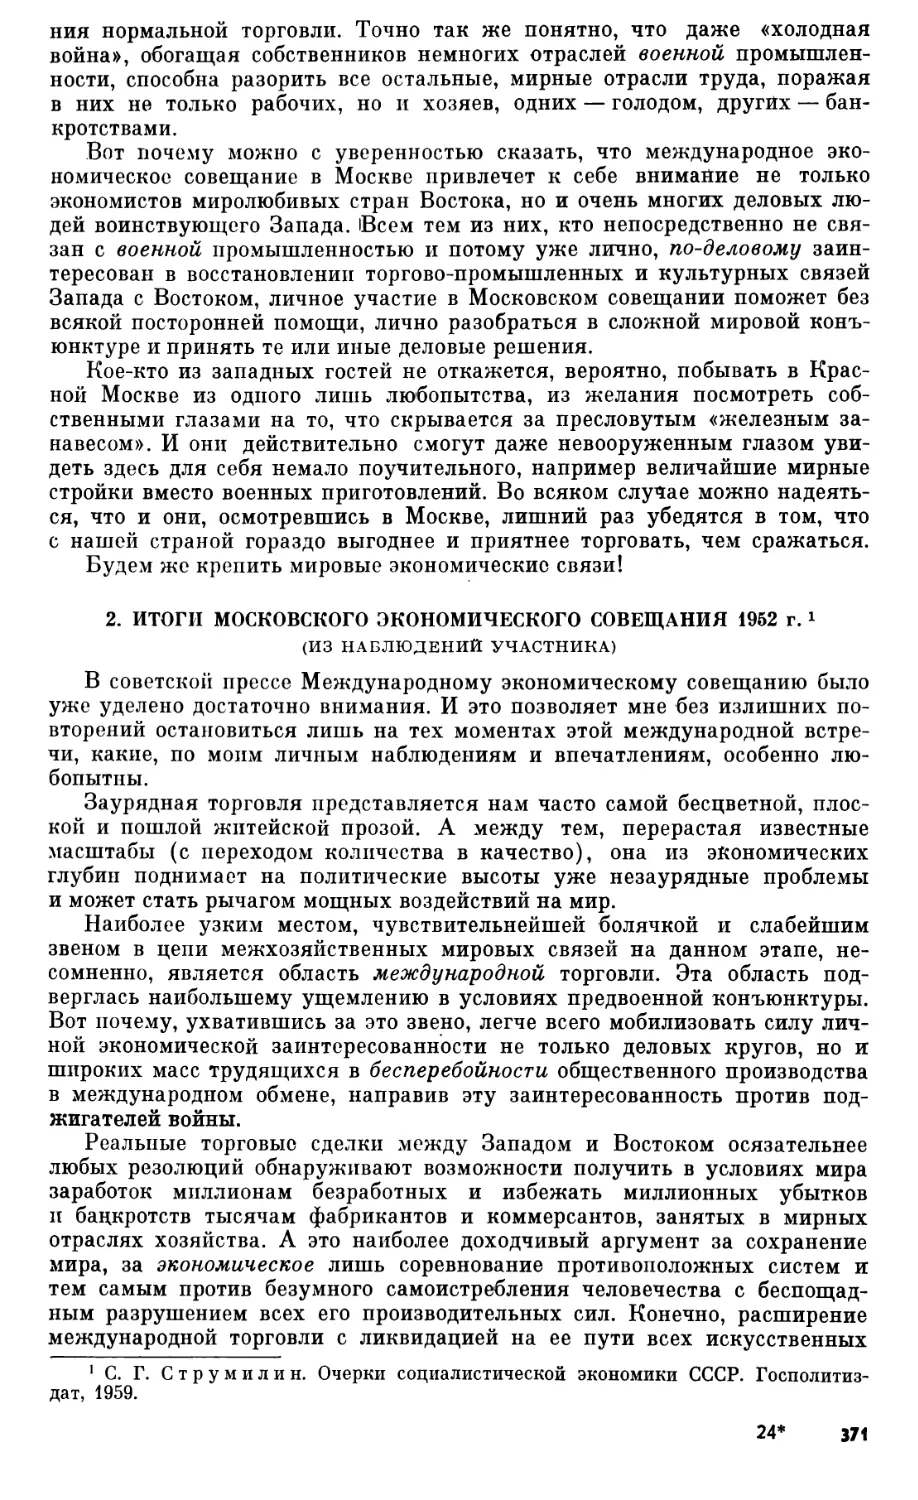 2. Итоги Московского экономического совещания 1952 г